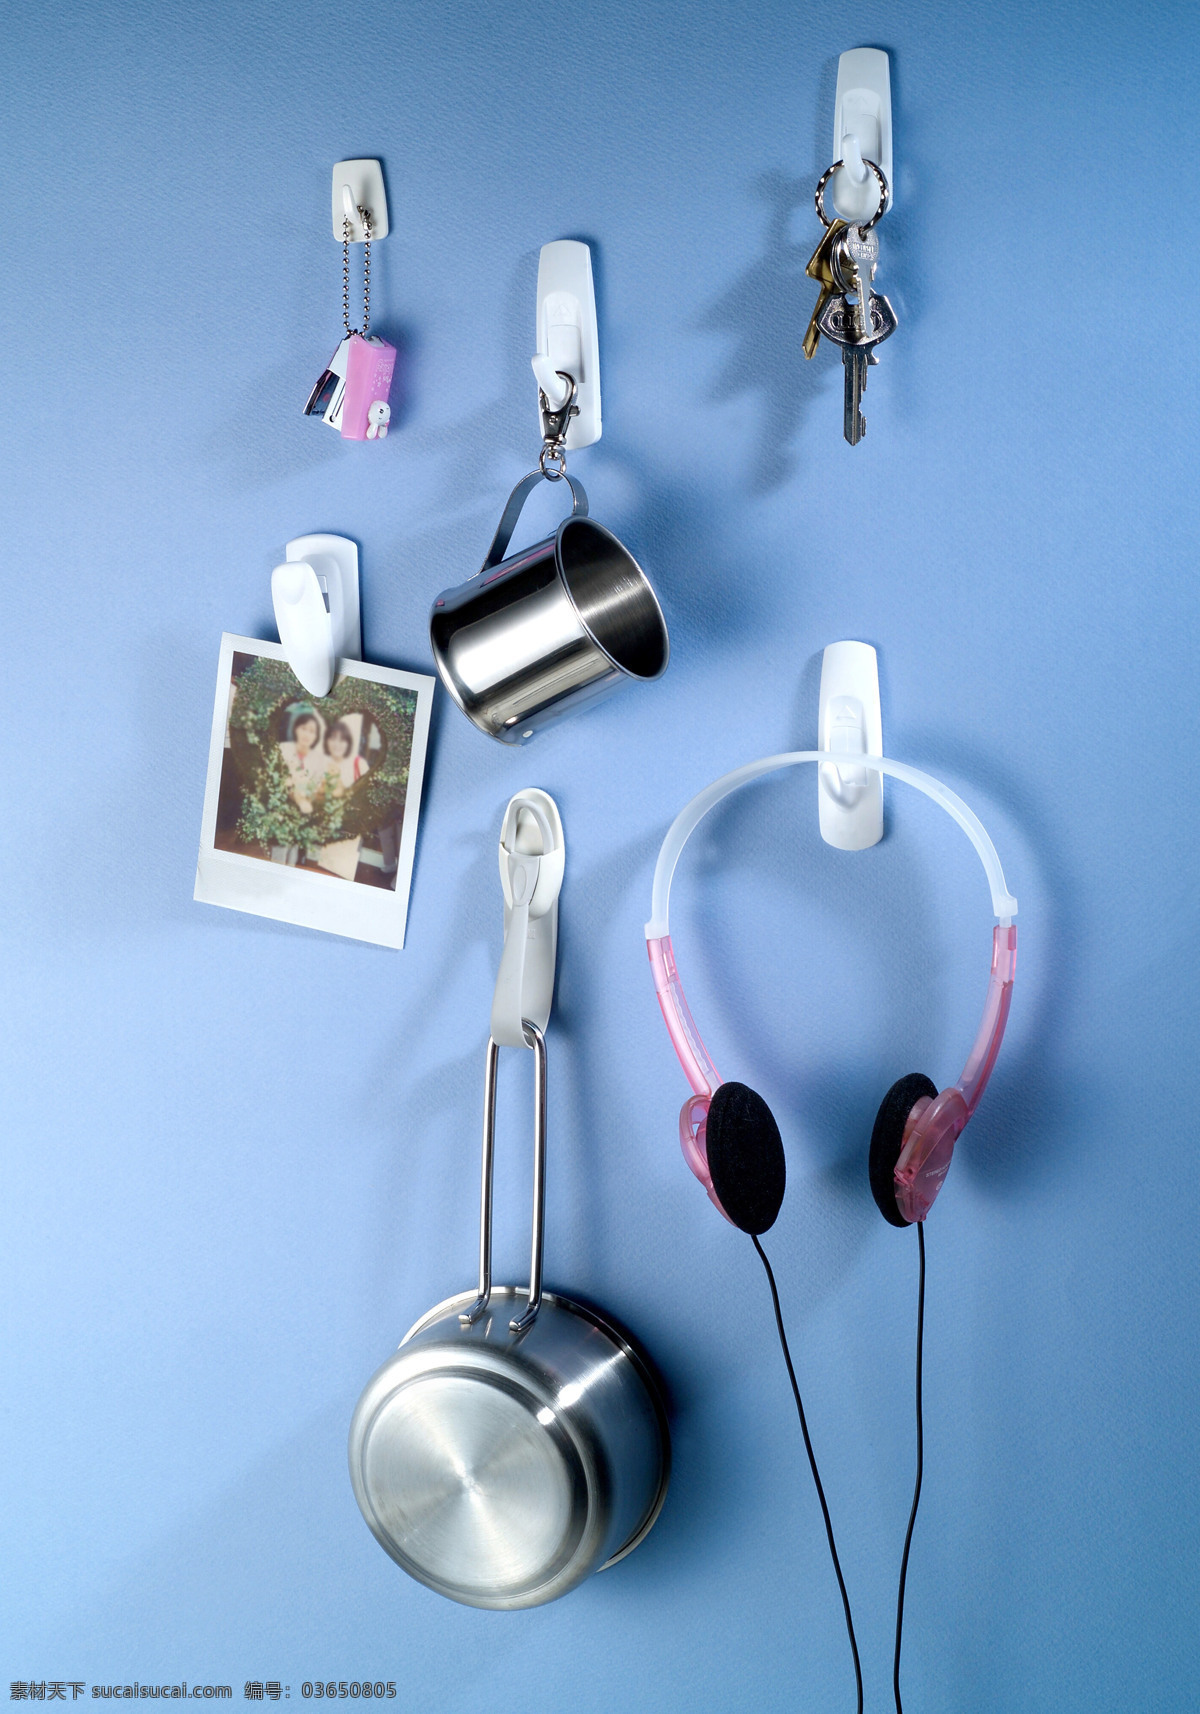 静物 物品 创意 组合 造型 茶杯 耳机 夹子 平底锅 钥匙 照片 小烧锅 风景 生活 旅游餐饮